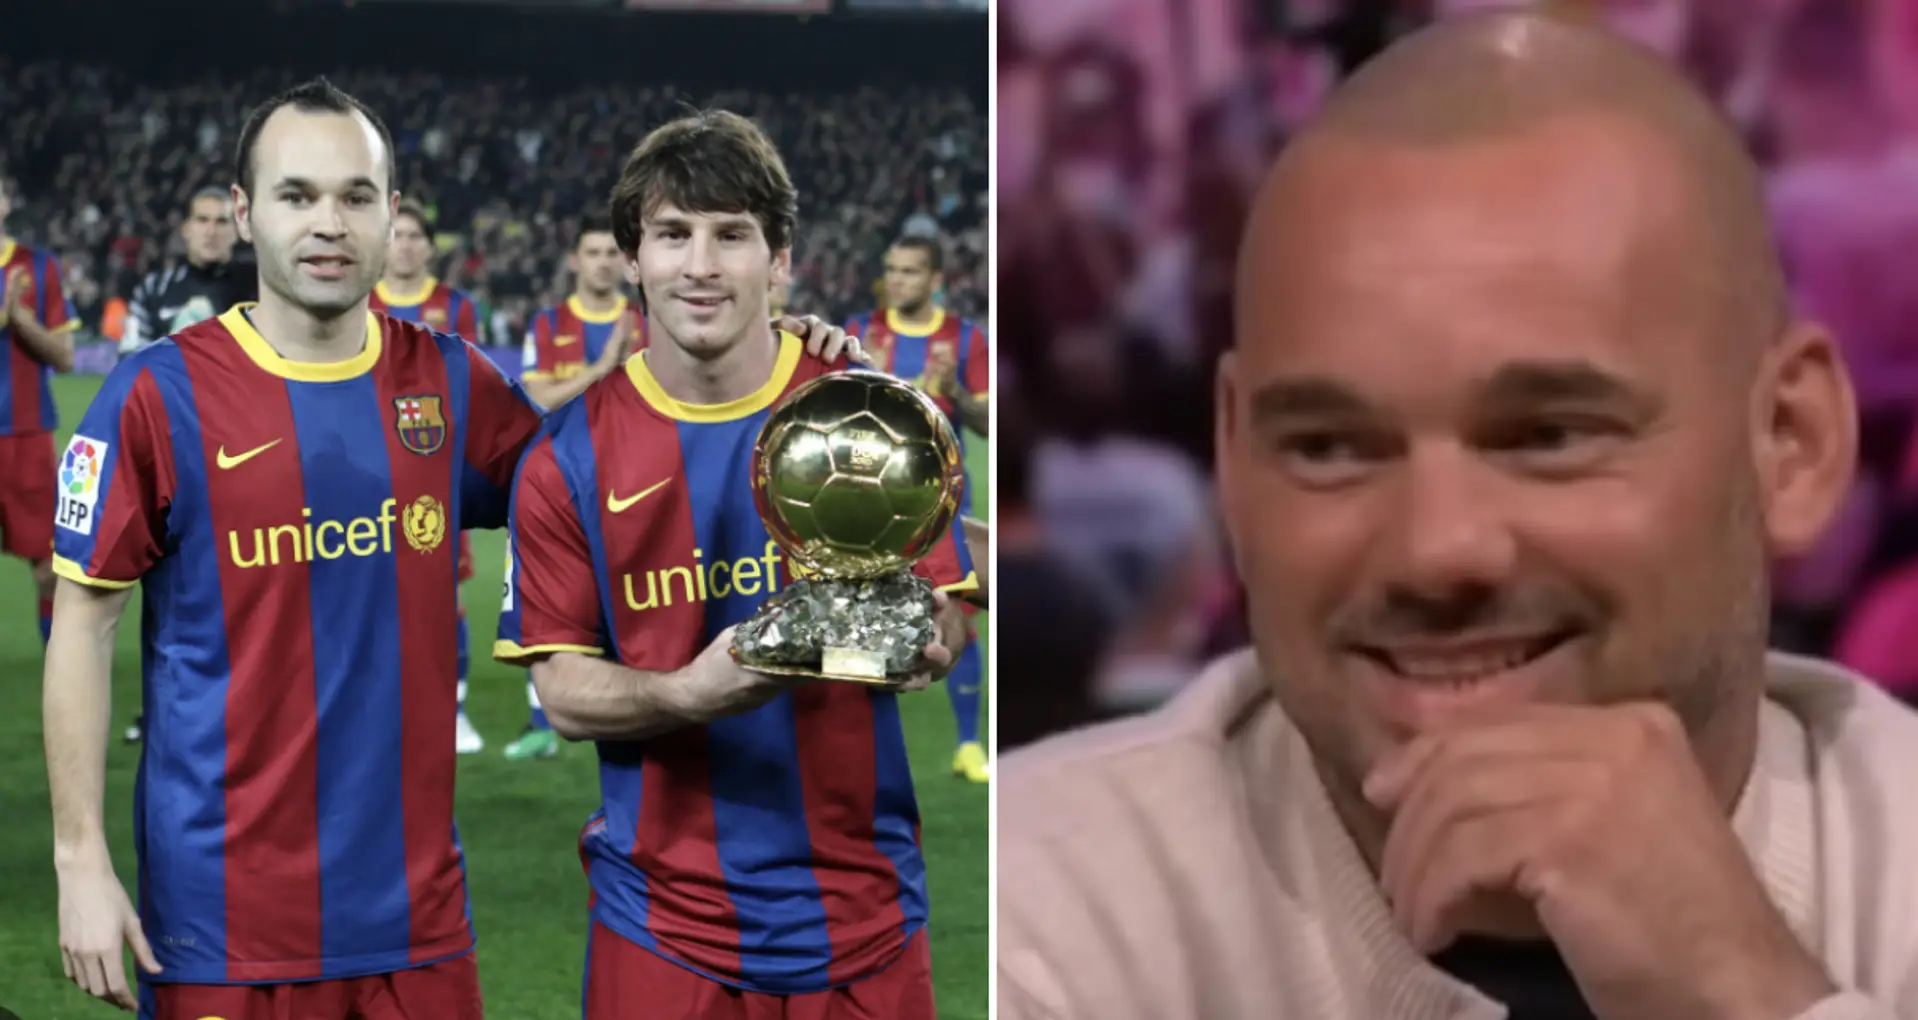 'It was unfair' Wesley Sneijder reveals true feelings about Leo Messi